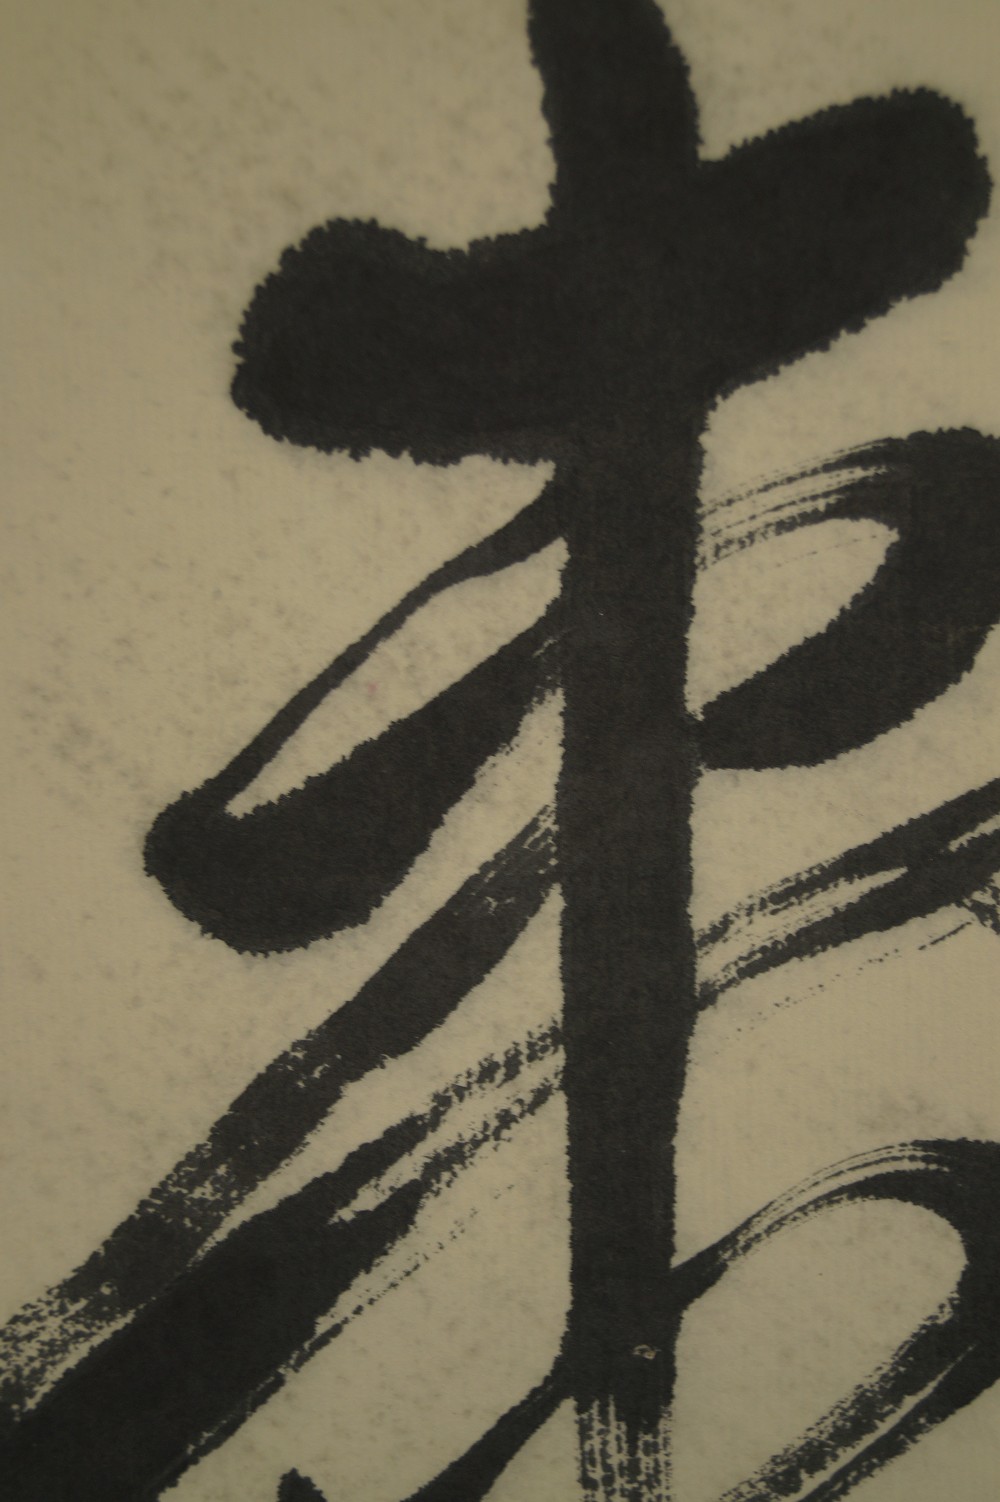 Kalligraphie "Langes Leben" - Japanisches Rollbild (Kakemono)